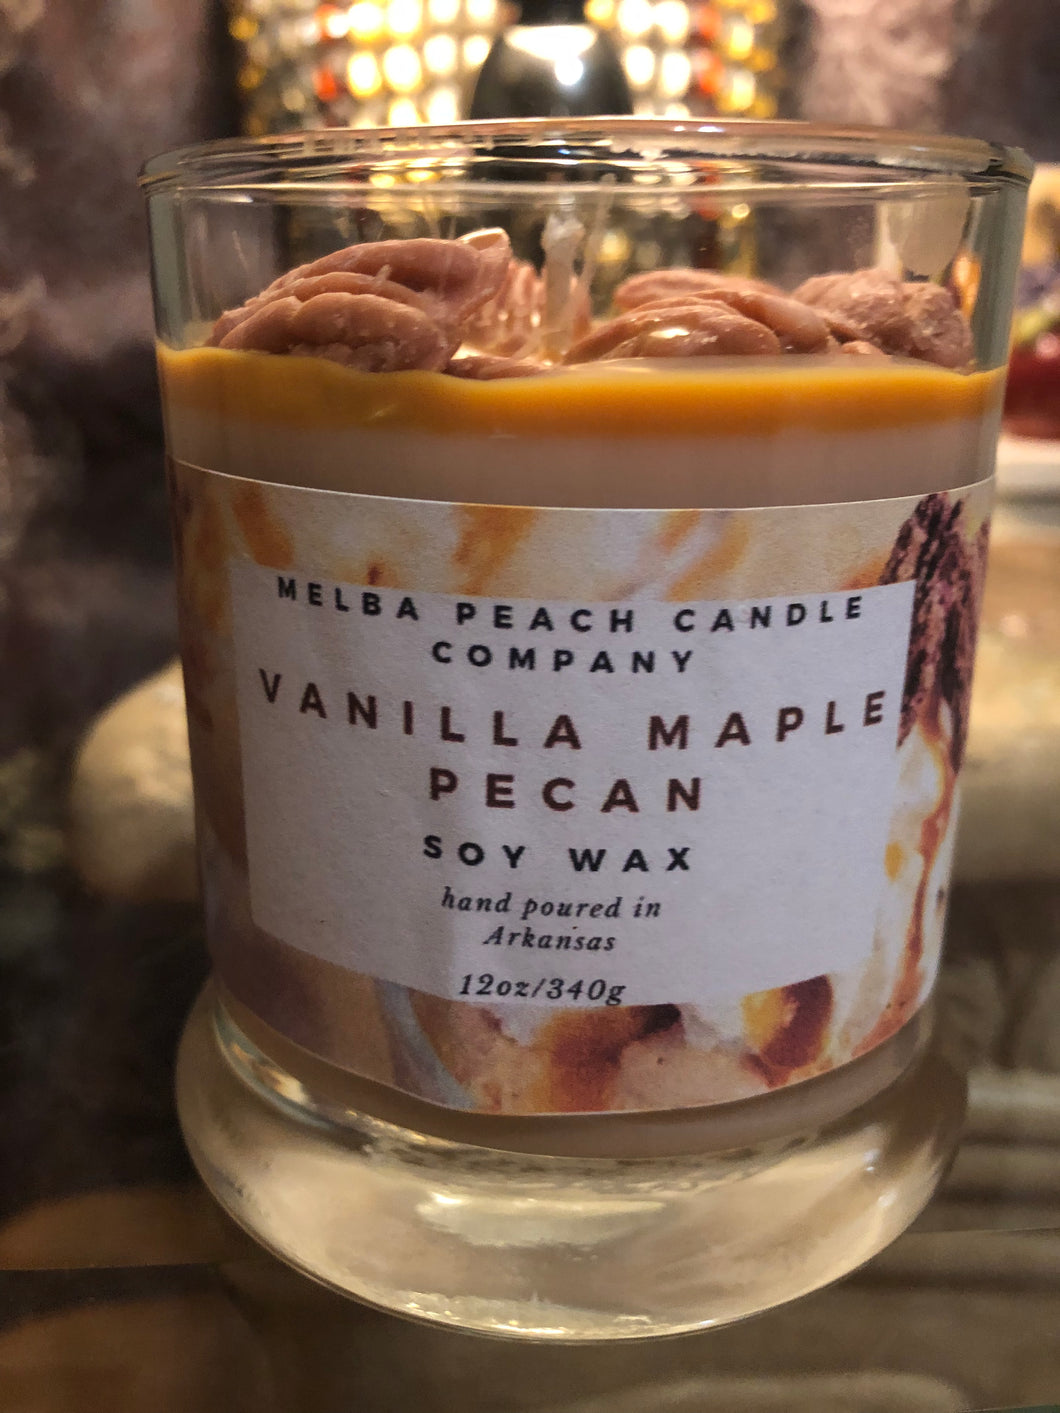 Vanilla Maple Pecan